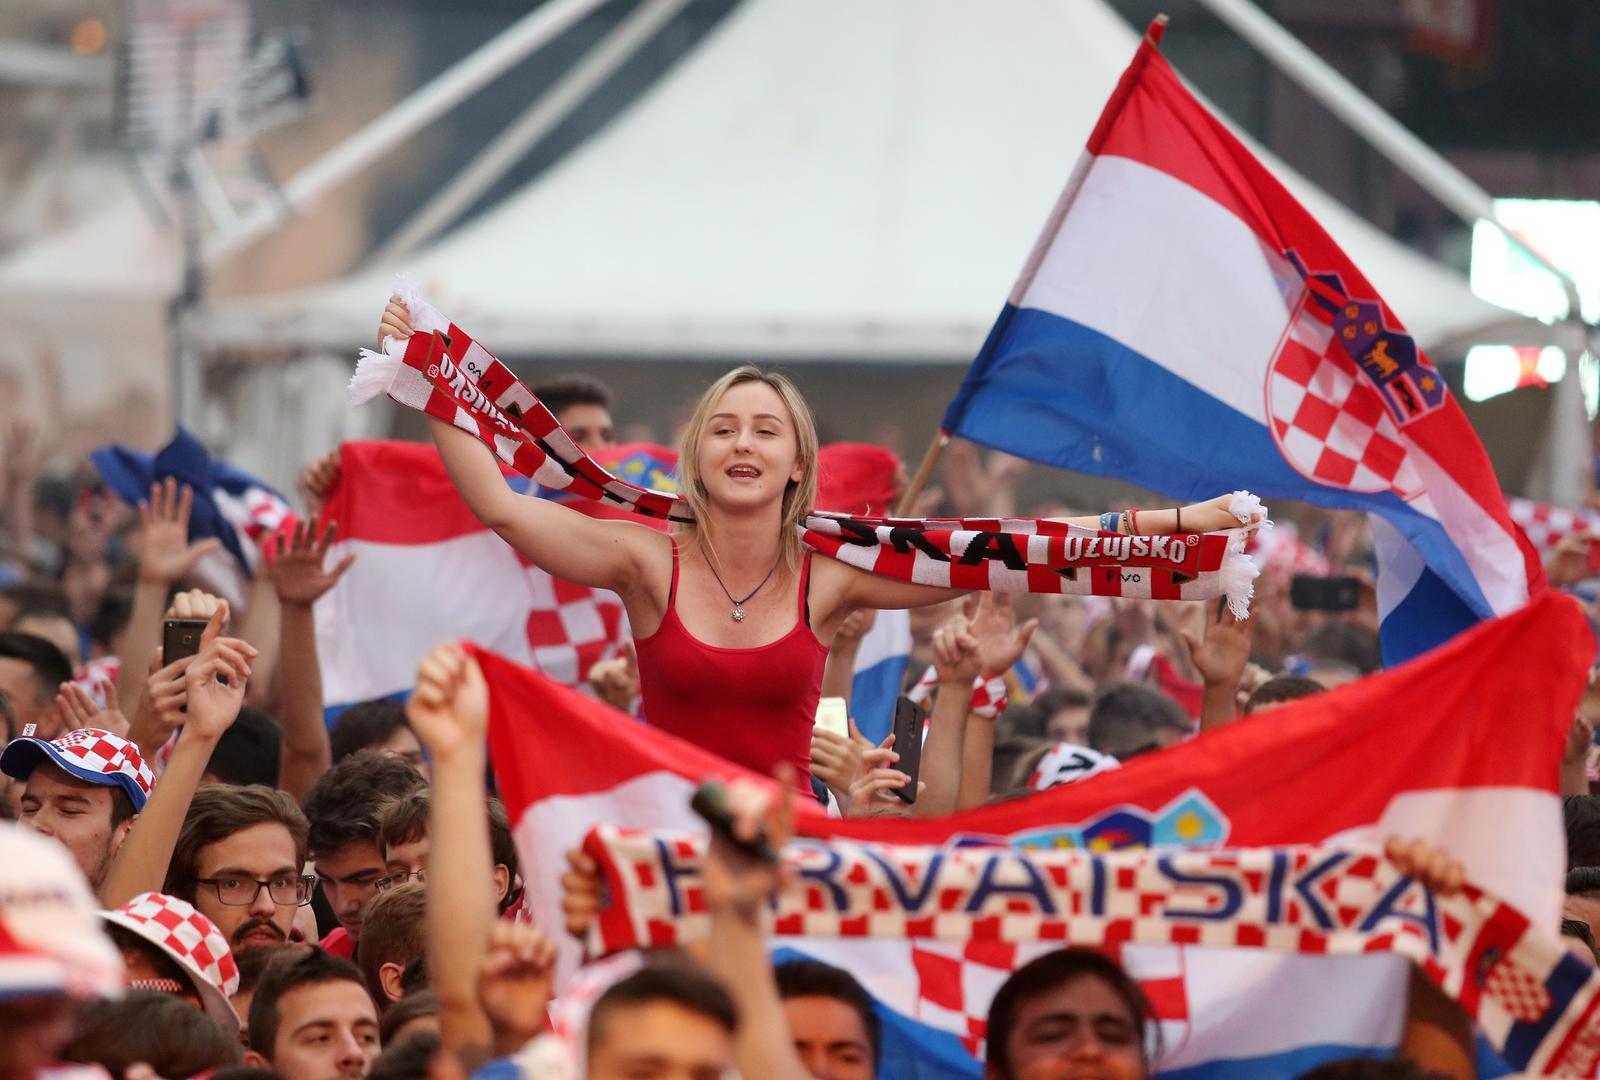 Evo kako su svjetski mediji reagirali na pobjedu Hrvatske